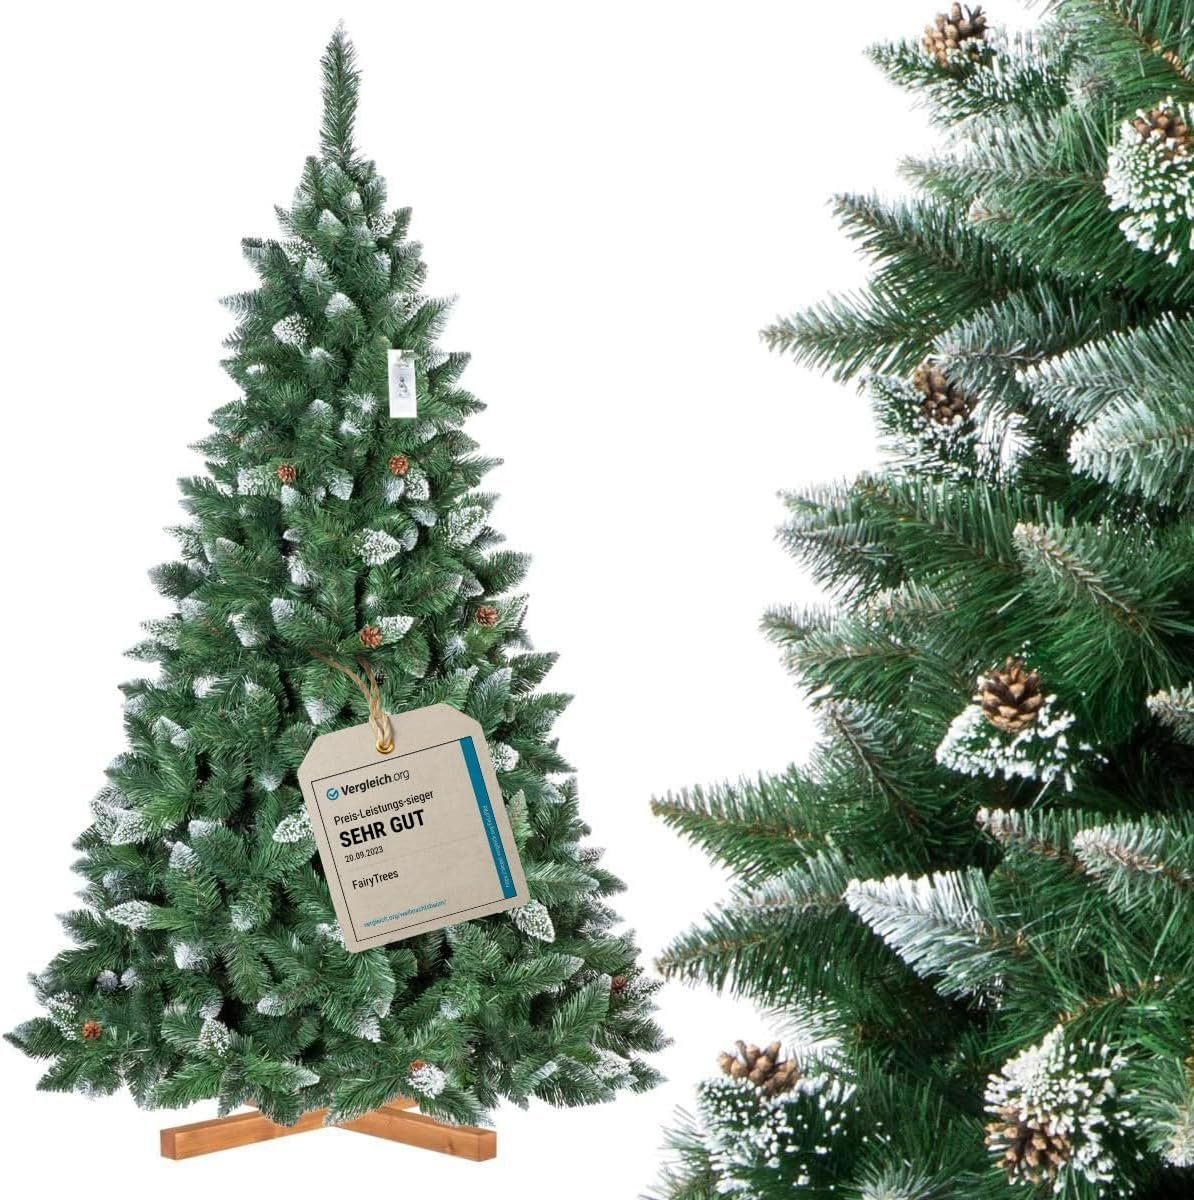 Fairytrees Künstlicher Weihnachtsbaum FT04, Kiefer Natur-Weiss beschneit, mit echten Tannenzapfen und Echtholz Baumständer